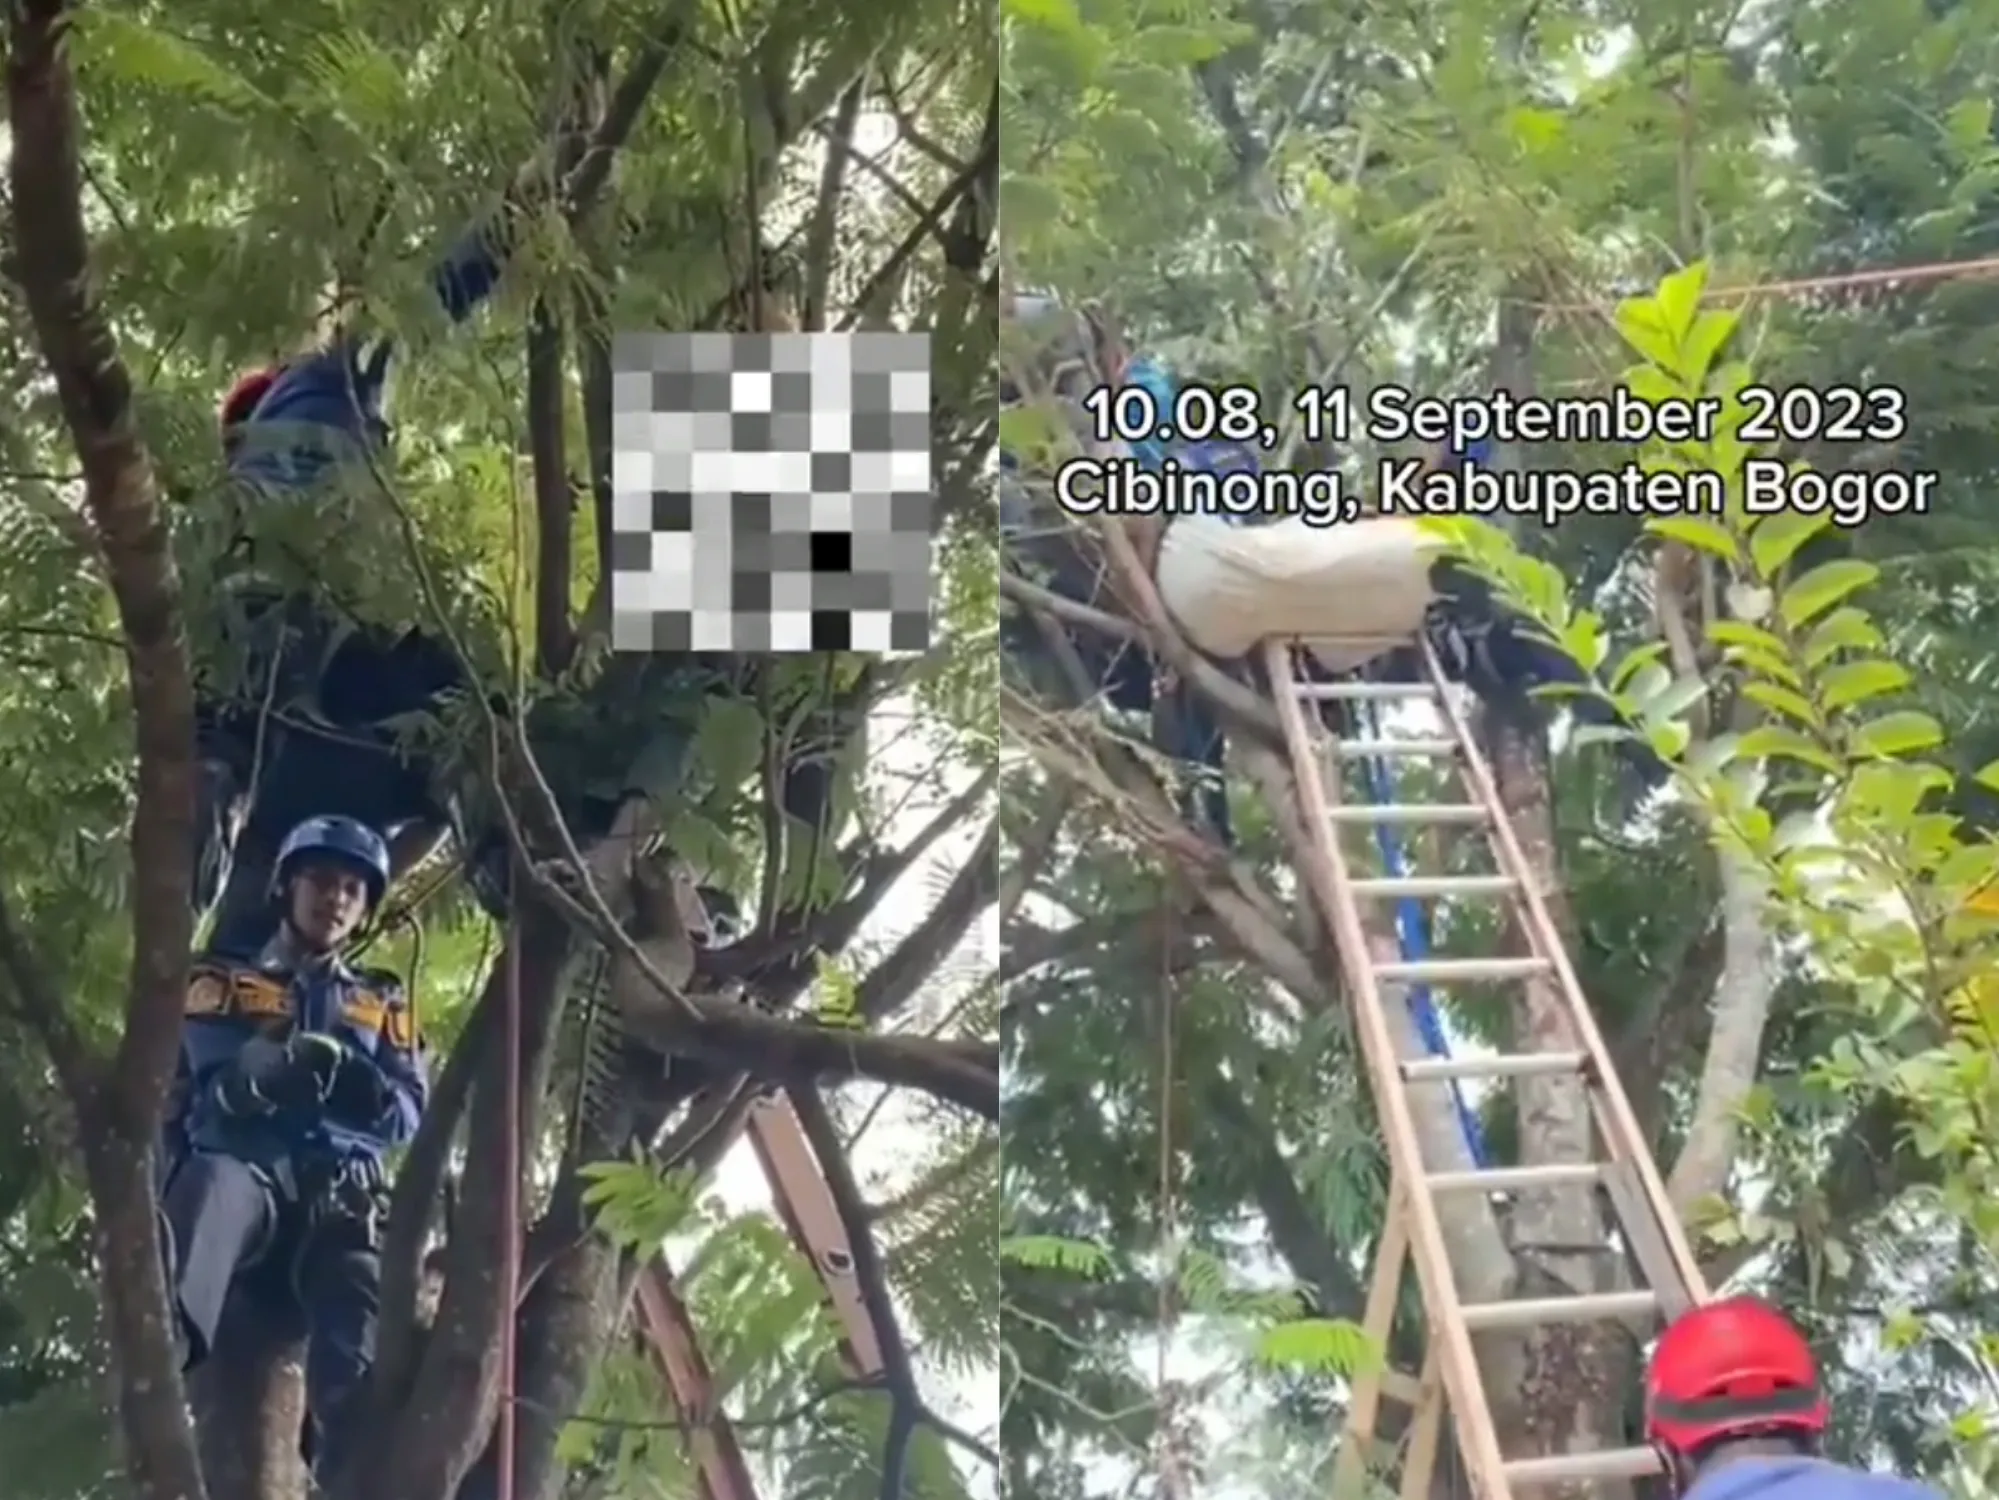 Seorang Pria Tewas Tersengat Listrik di Bogor Hari Ini 11 September 2023, Korban Meninggal di Pohon Saat Memetik Pete